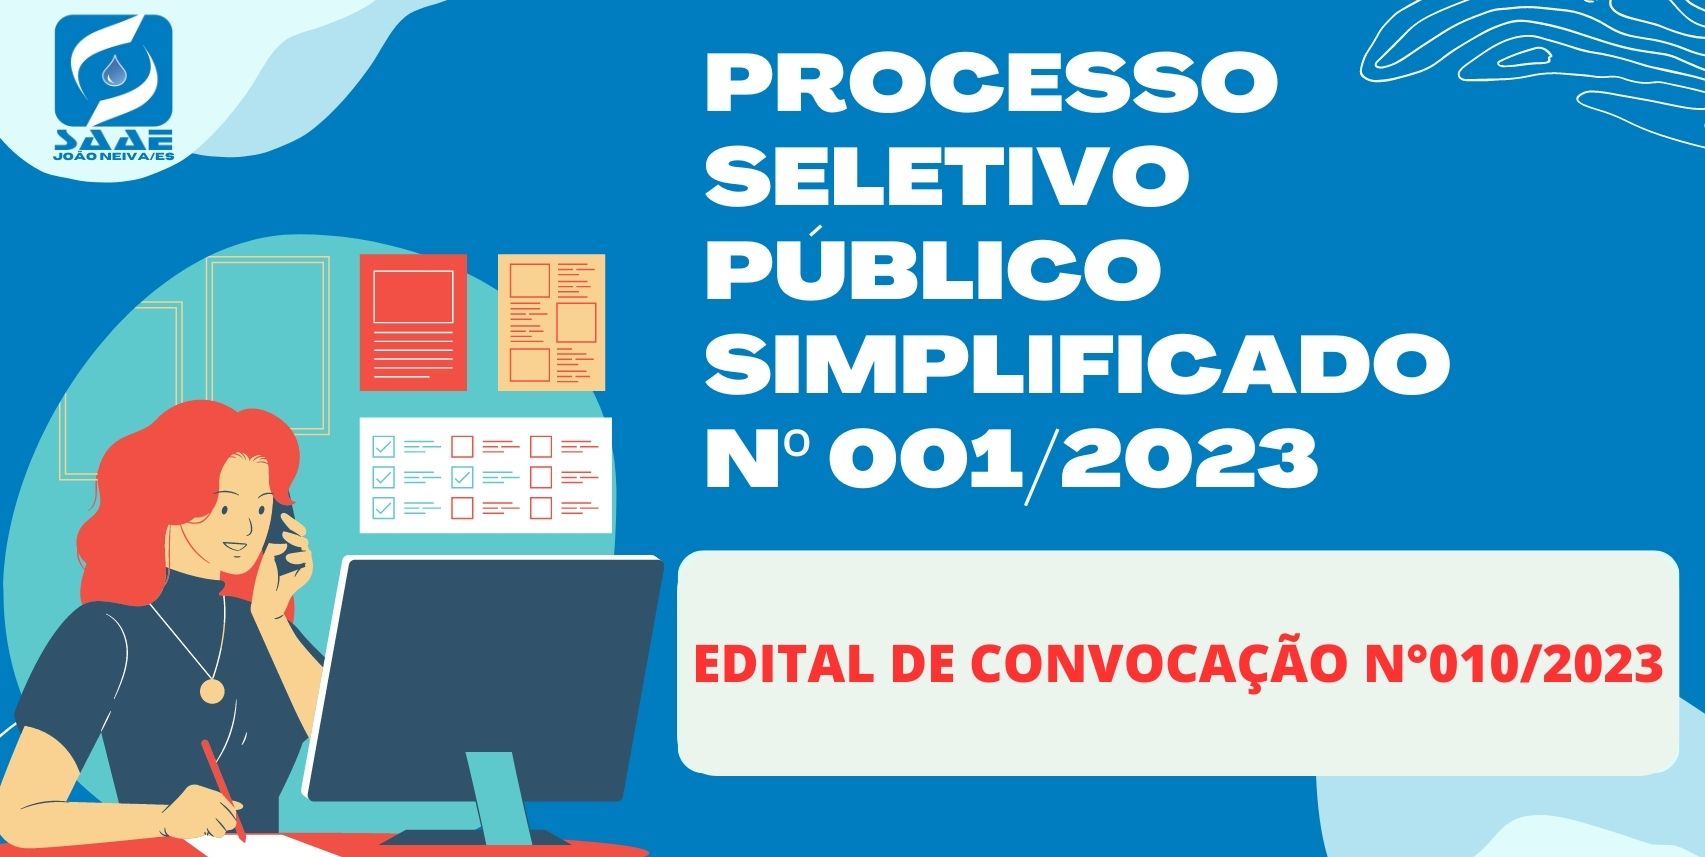 EDITAL DE CONVOCAÇÃO Nº 010/2023 - PROCESSO SELETIVO PÚBLICO SIMPLIFICADO Nº 001/2023